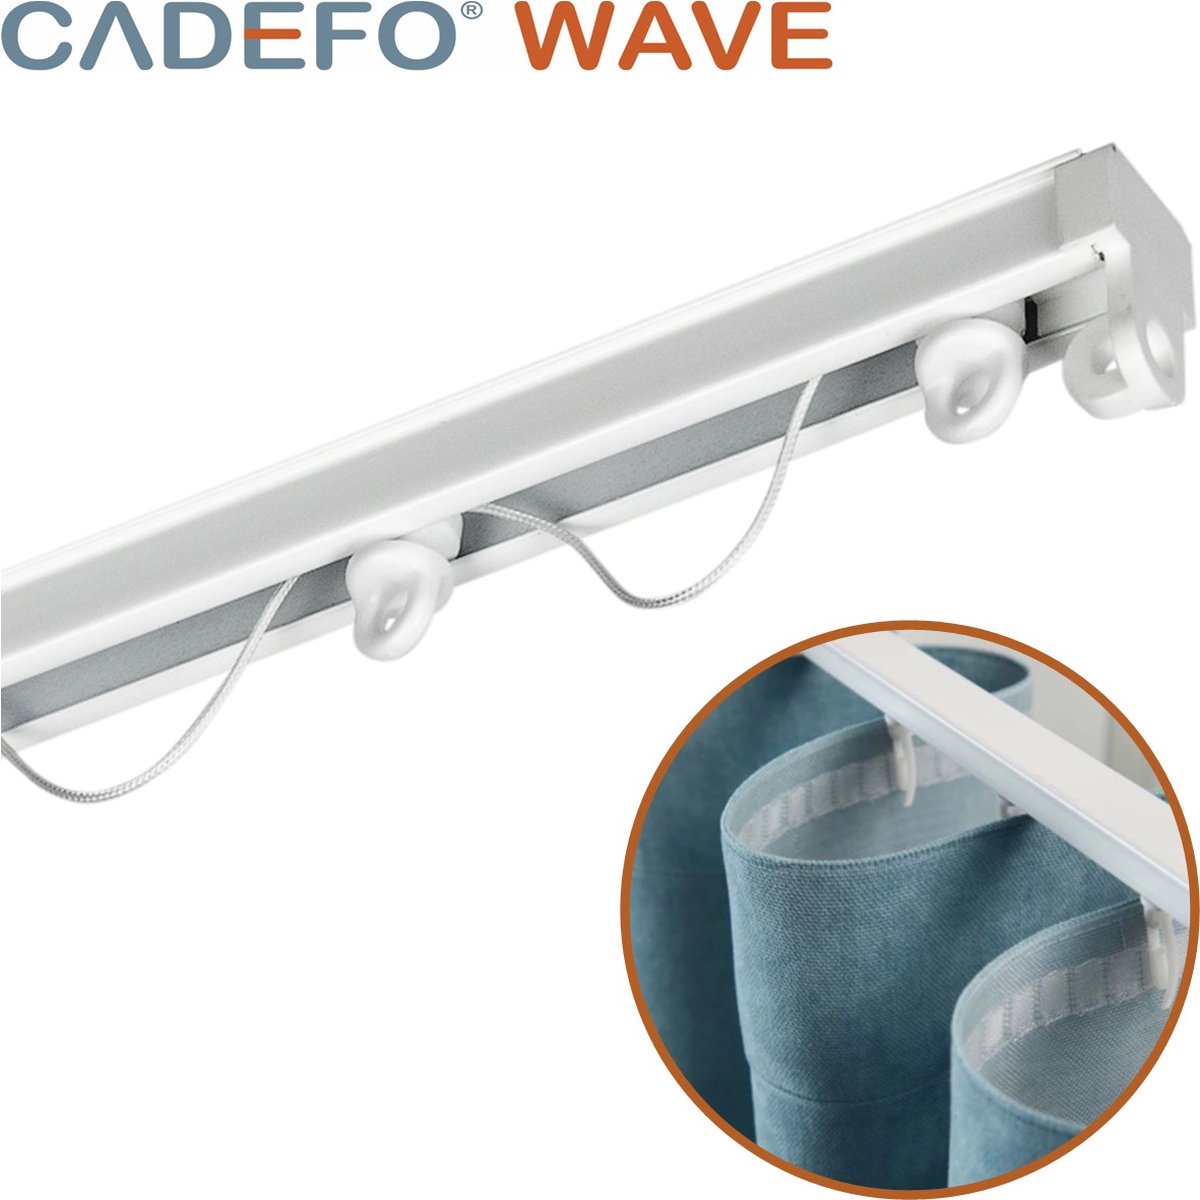 CADEFO WAVE (401 - 450 cm) Gordijnrails - Compleet op maat! - UIT 1 STUK - Leverbaar tot 6 meter - Plafondbevestiging - Lengte 422 cm